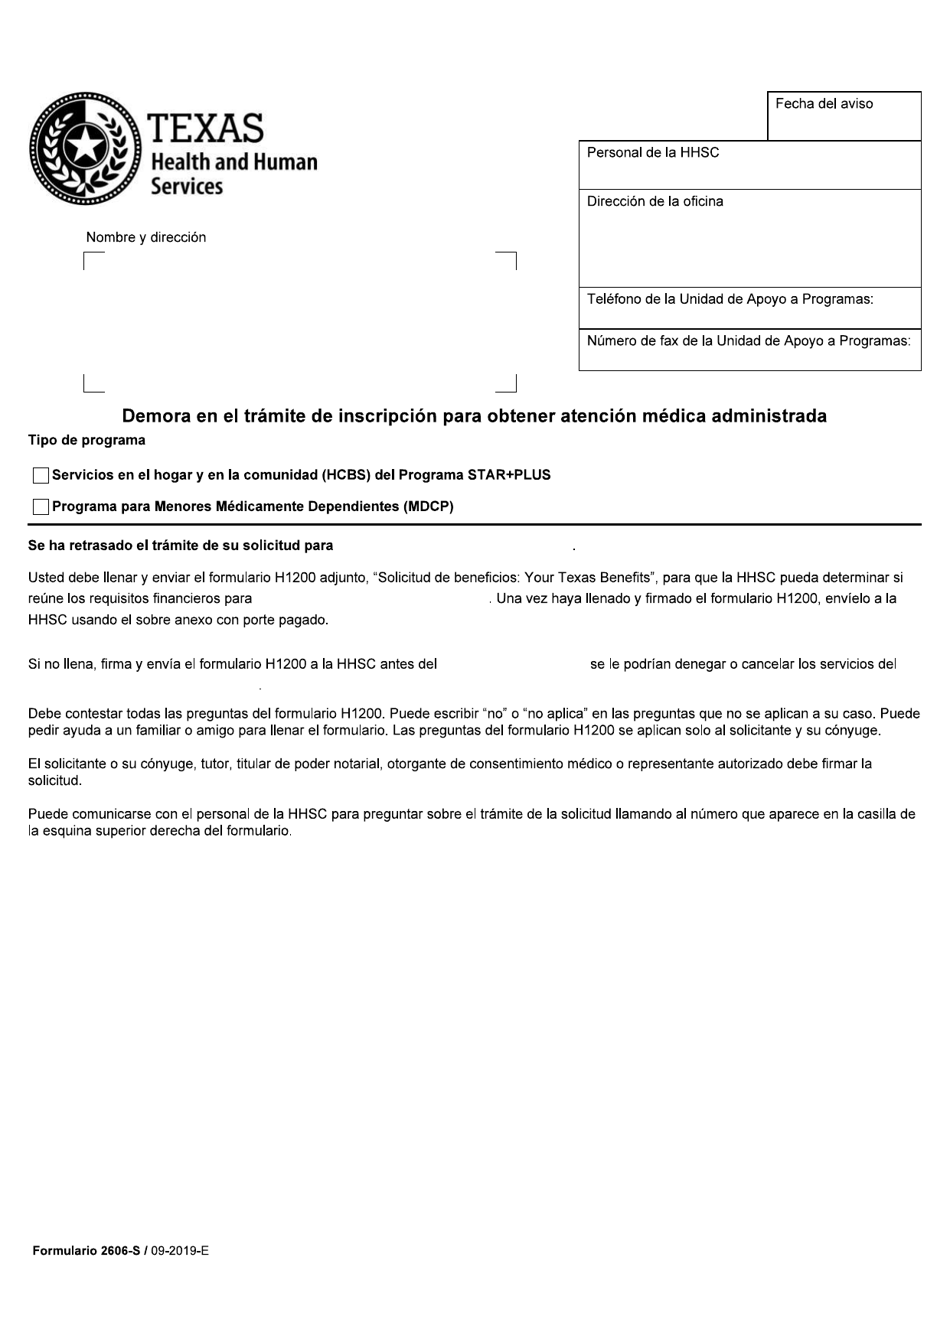 Formulario 2606-S Demora En El Tramite De Inscripcion Para Obtener Atencion Medica Administrada - Texas (Spanish), Page 1